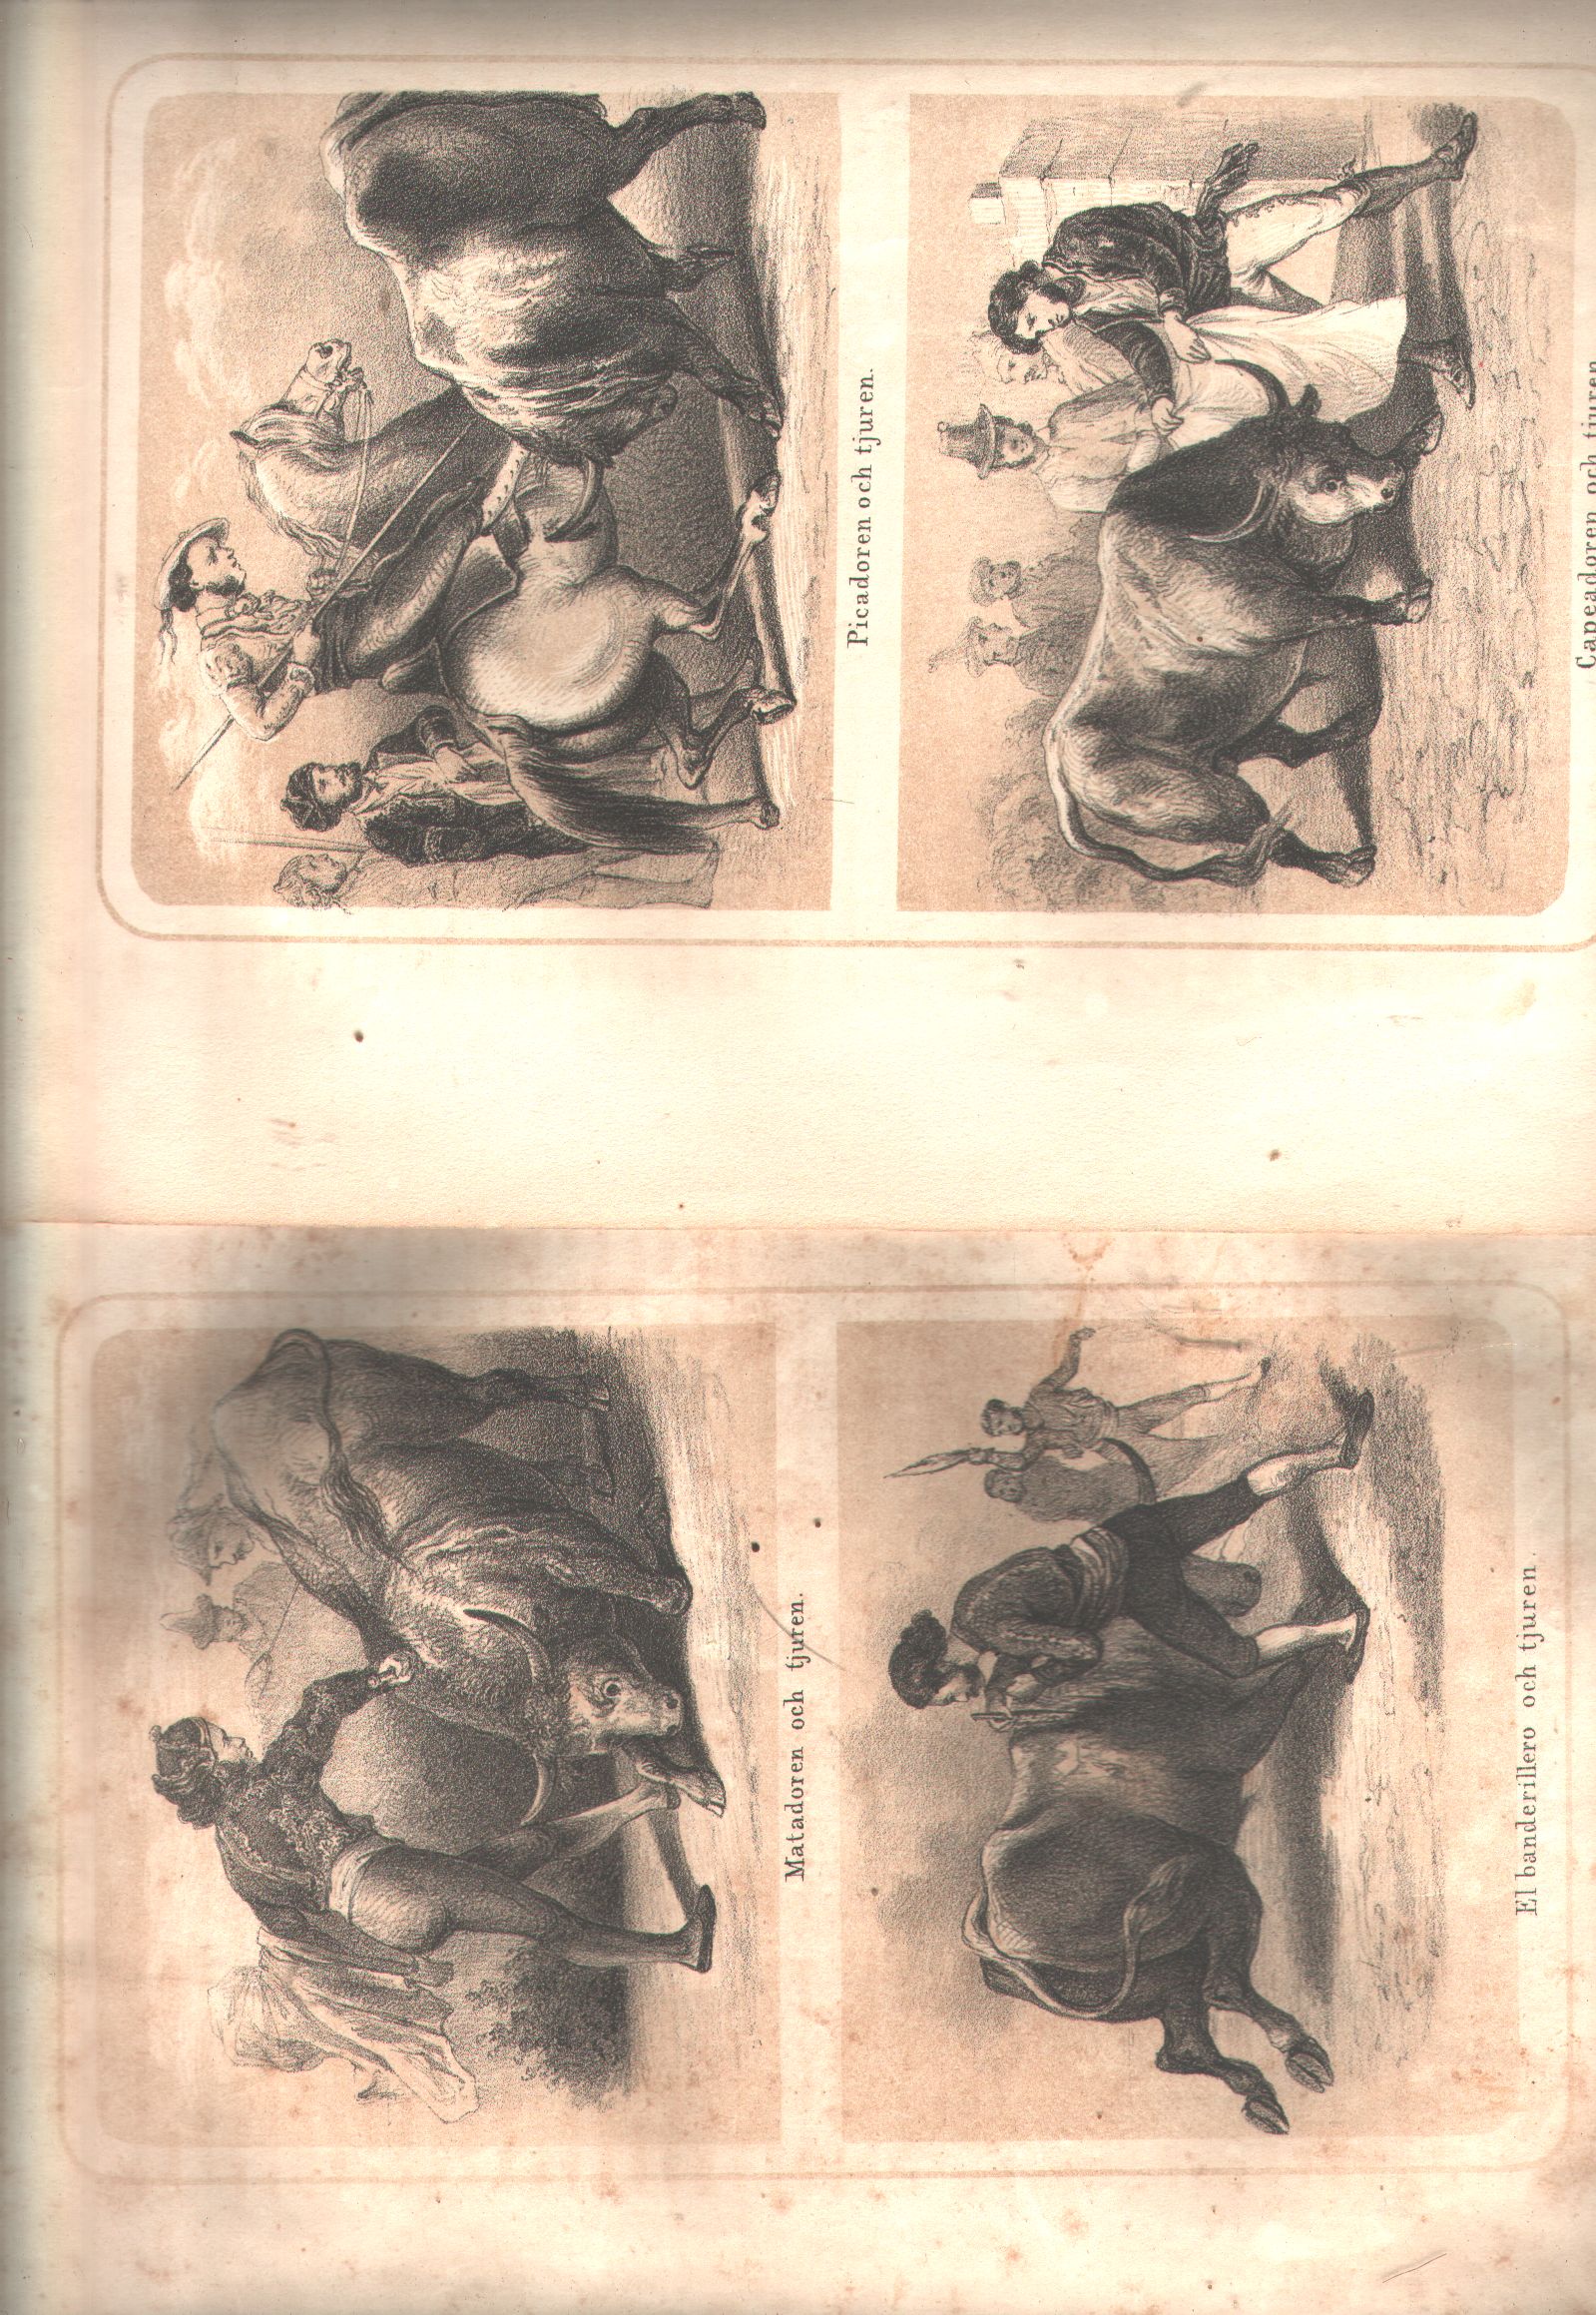 Manual de Cuendas, V. de Ferral  2 lithographierte getönte Tafeln mit 4 Abb. zum spanischen Stierkampf zeigt Matador, Picador, Capedor und  Banderillo 